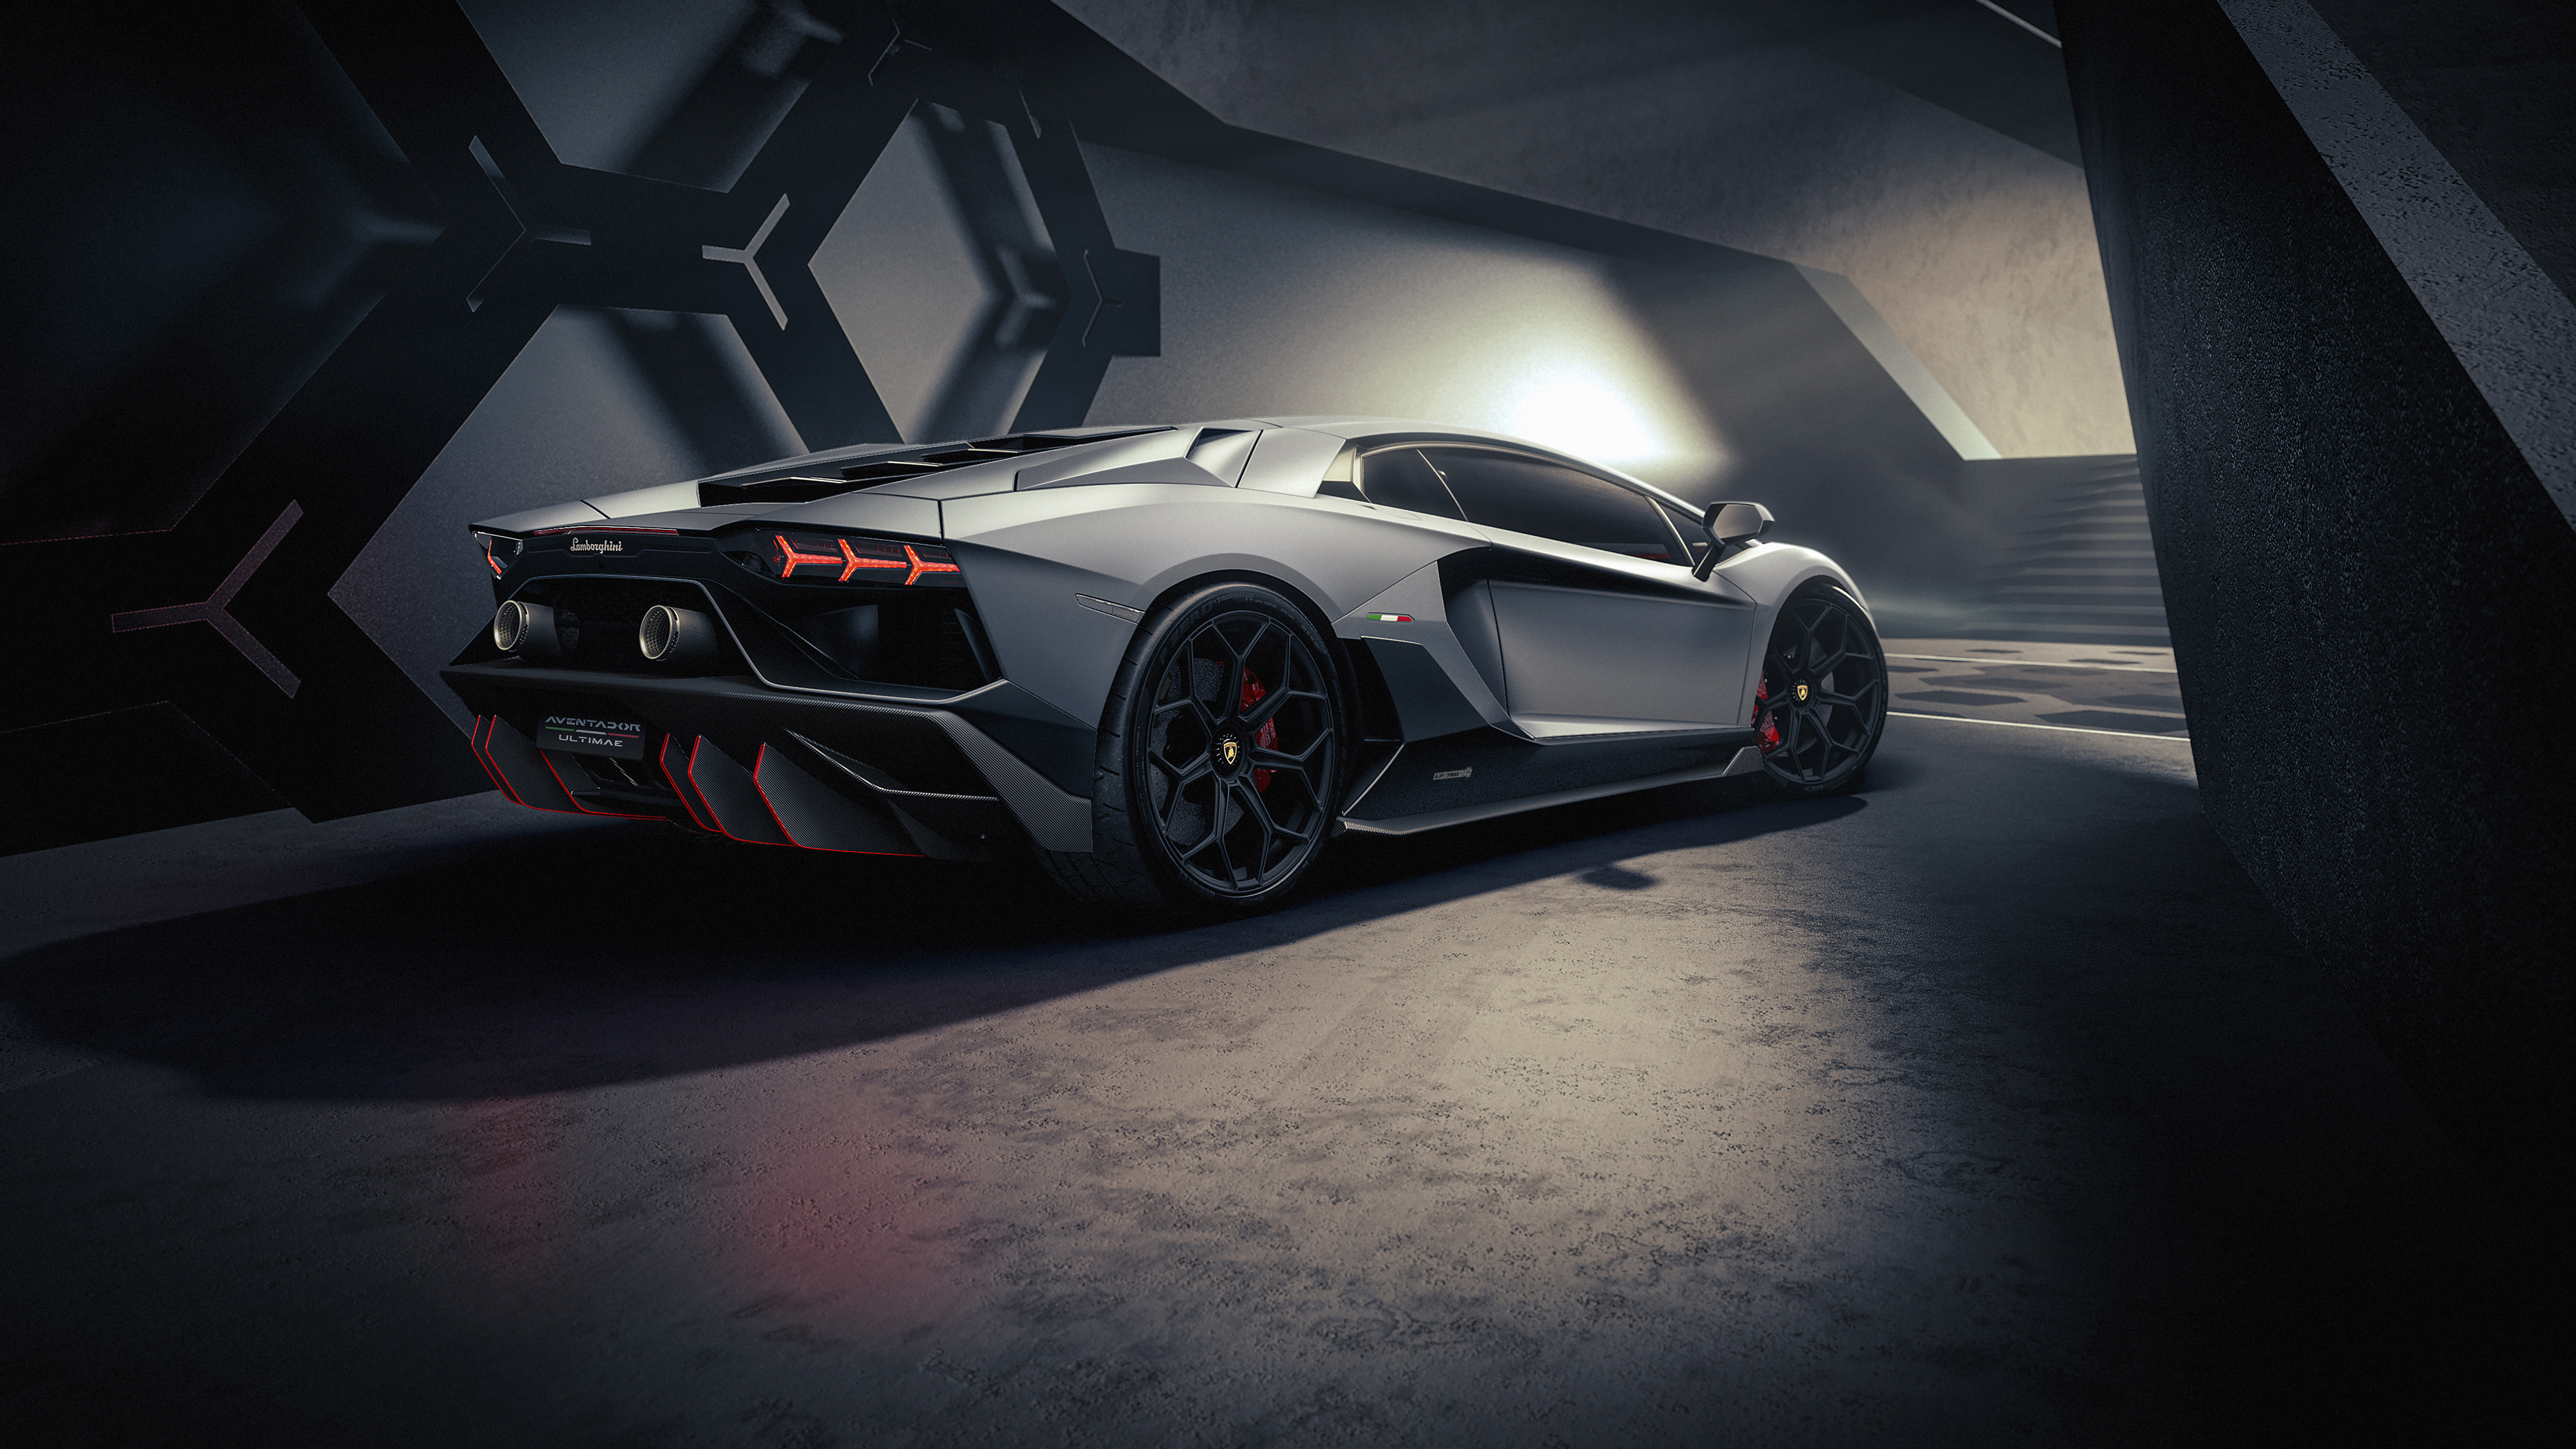 Hình nền siêu xe Lamborghini: Bạn đang tìm kiếm hình nền máy tính ấn tượng và đầy cảm hứng? Hãy chọn ngay bức ảnh về siêu xe Lamborghini đẳng cấp! Được chụp với góc độ hoàn hảo và sắc nét, hình ảnh siêu xe Lamborghini sẽ giúp bạn thêm động lực và niềm tin trong công việc cũng như cuộc sống hàng ngày.